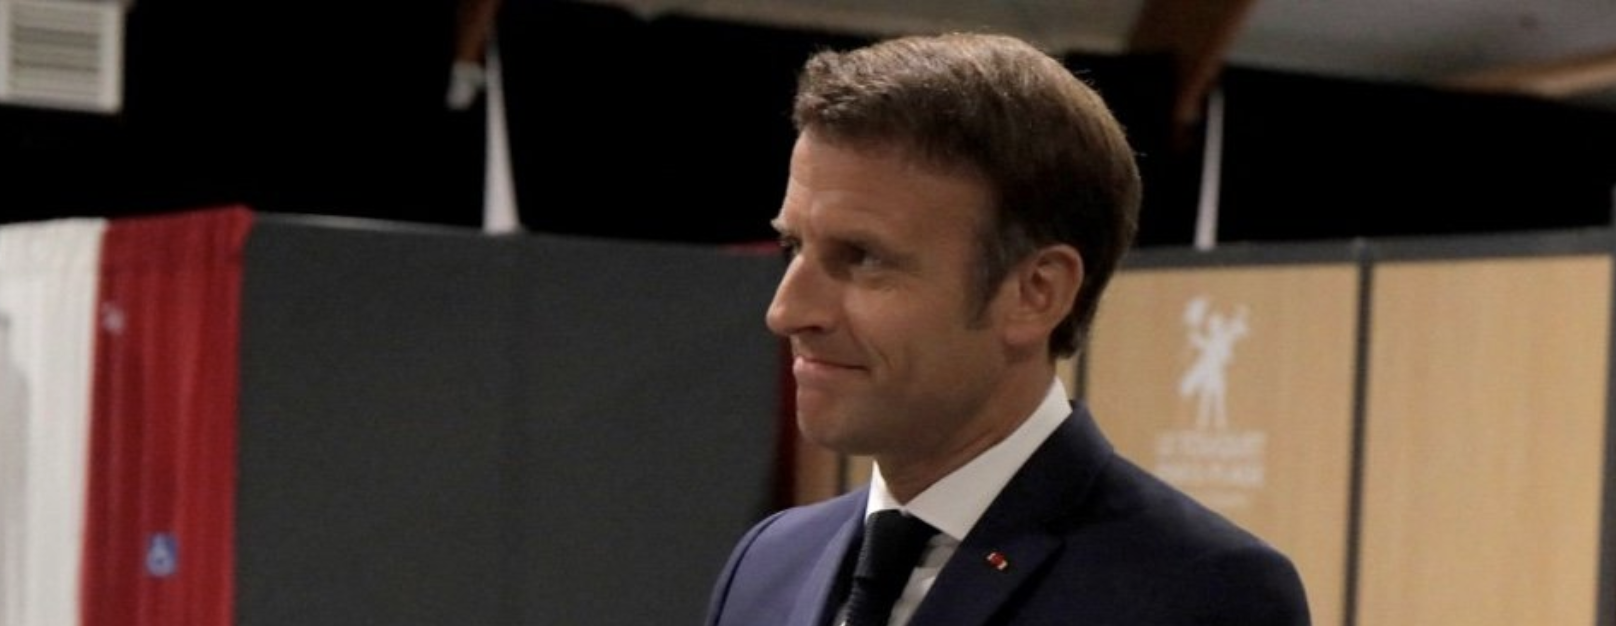 Percée du RN à l'Assemblée nationale : "Macron est le promoteur du Rassemblement national" accusent les Insoumis